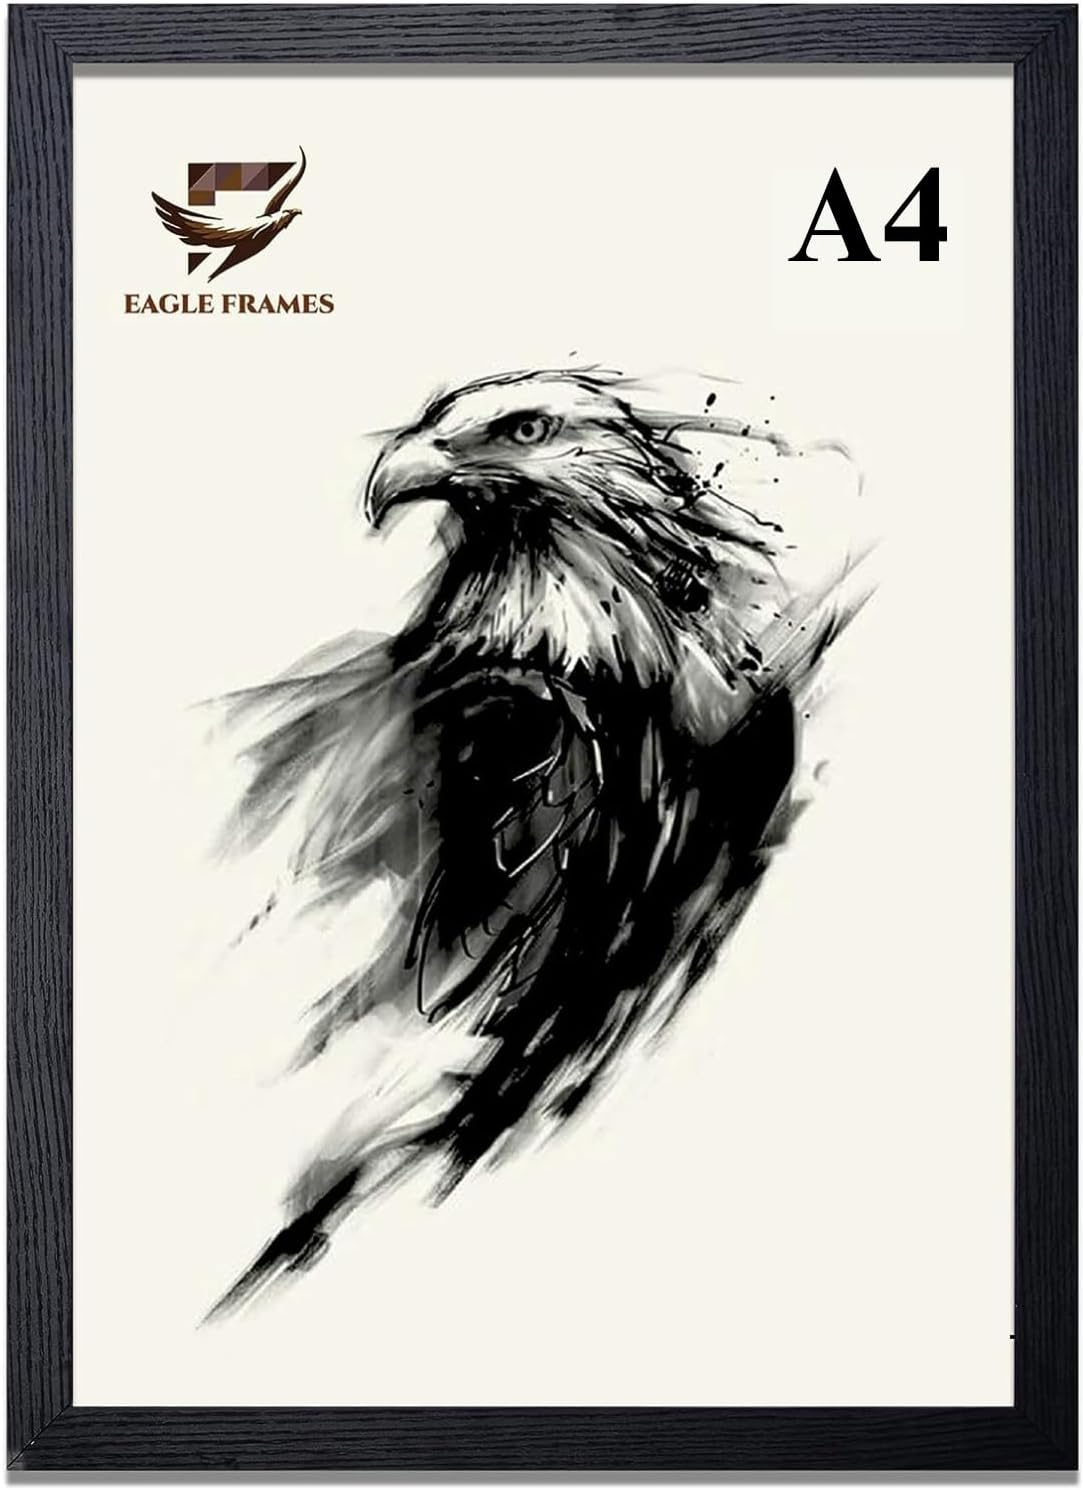 A4 Photo Frame Black Wooden - EAGLE FRAMES